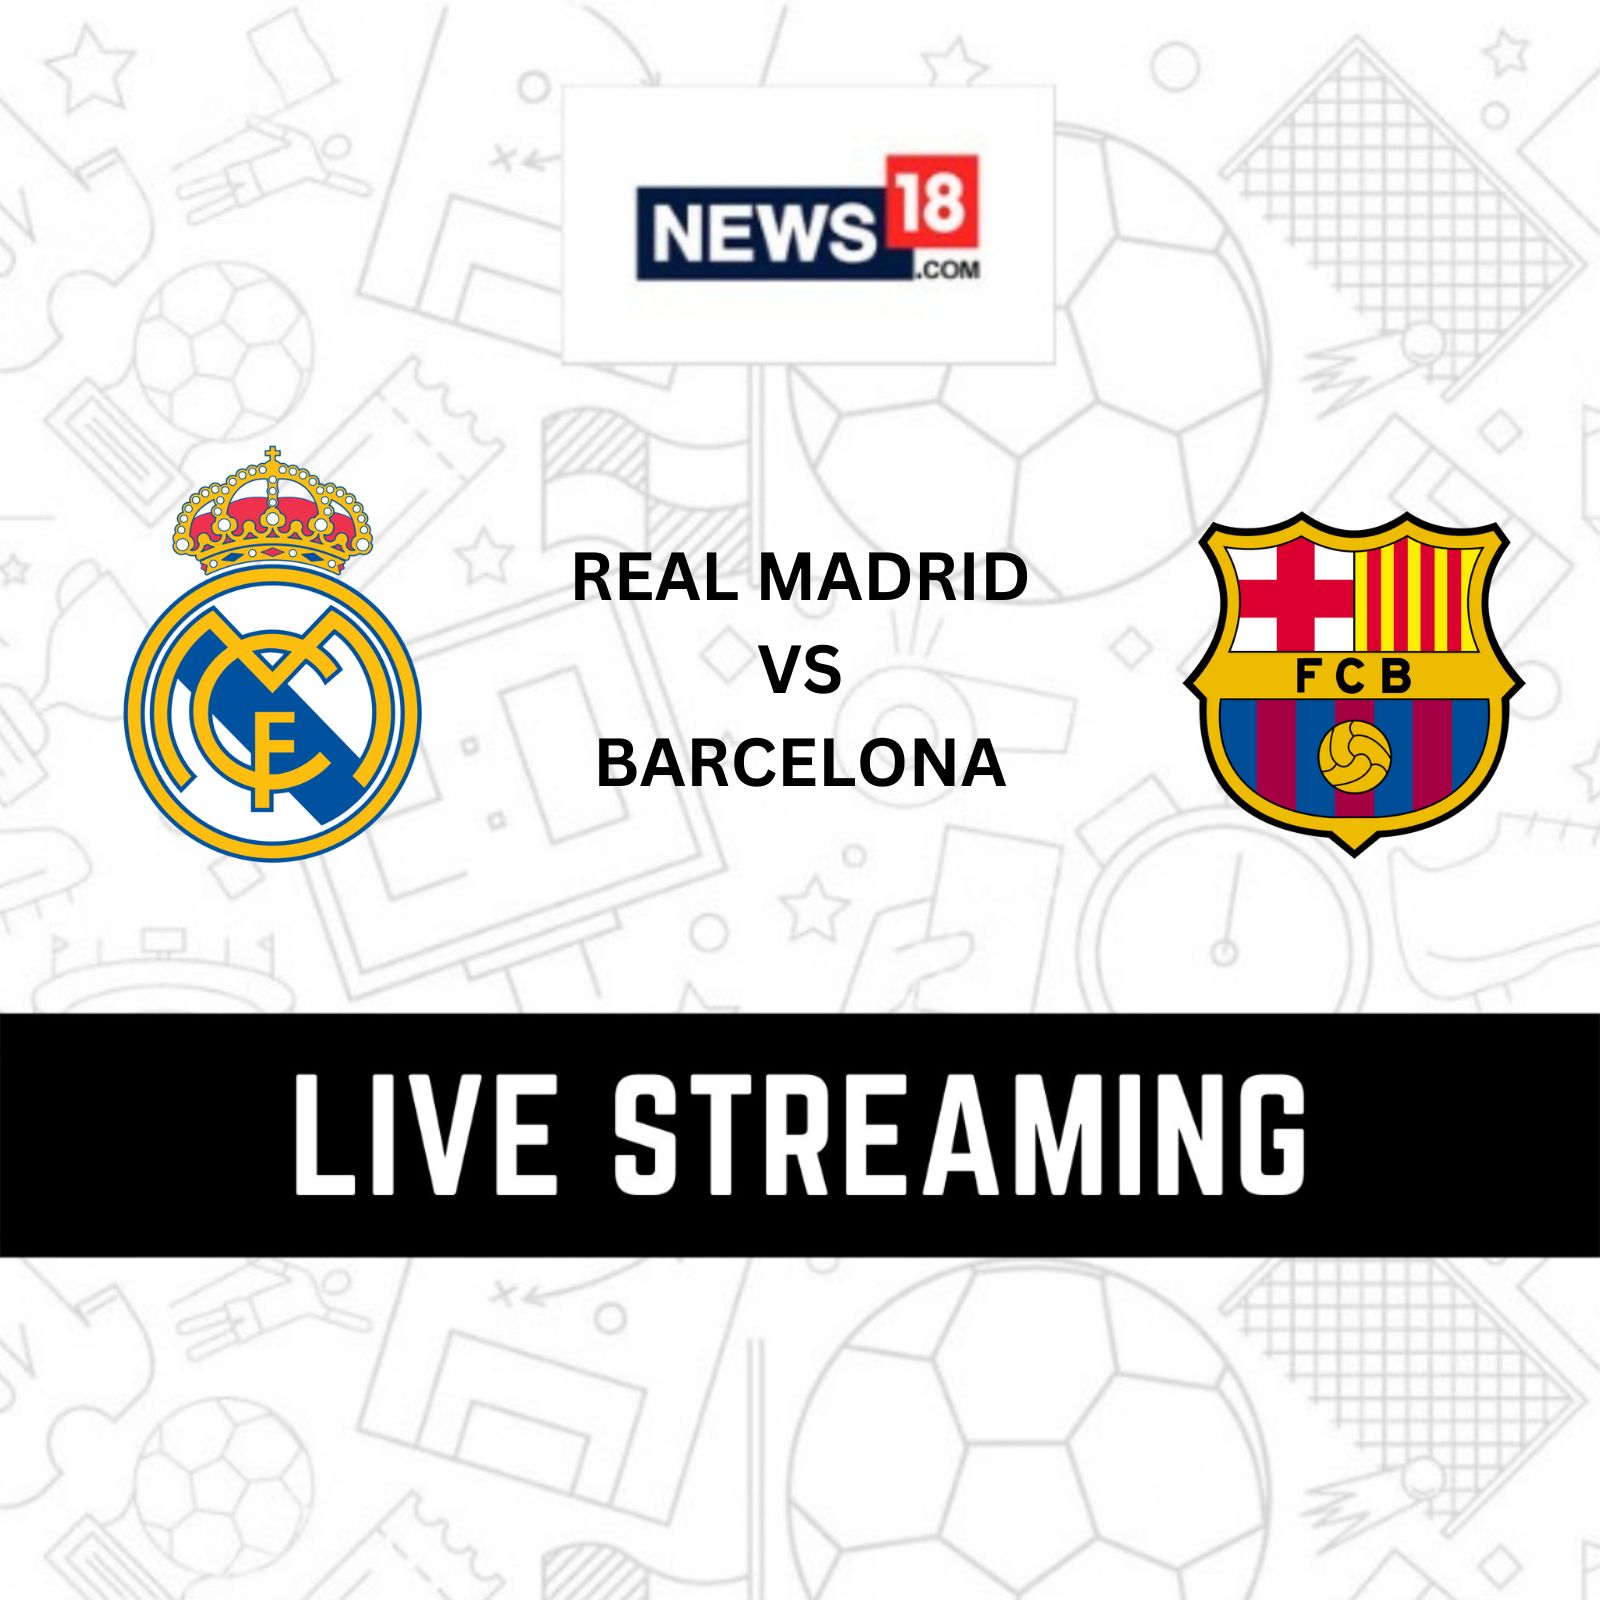 Real Madrid vs Barcelona La Liga Live Streaming When and Where to Watch Real Madrid vs Barcelona Match Live